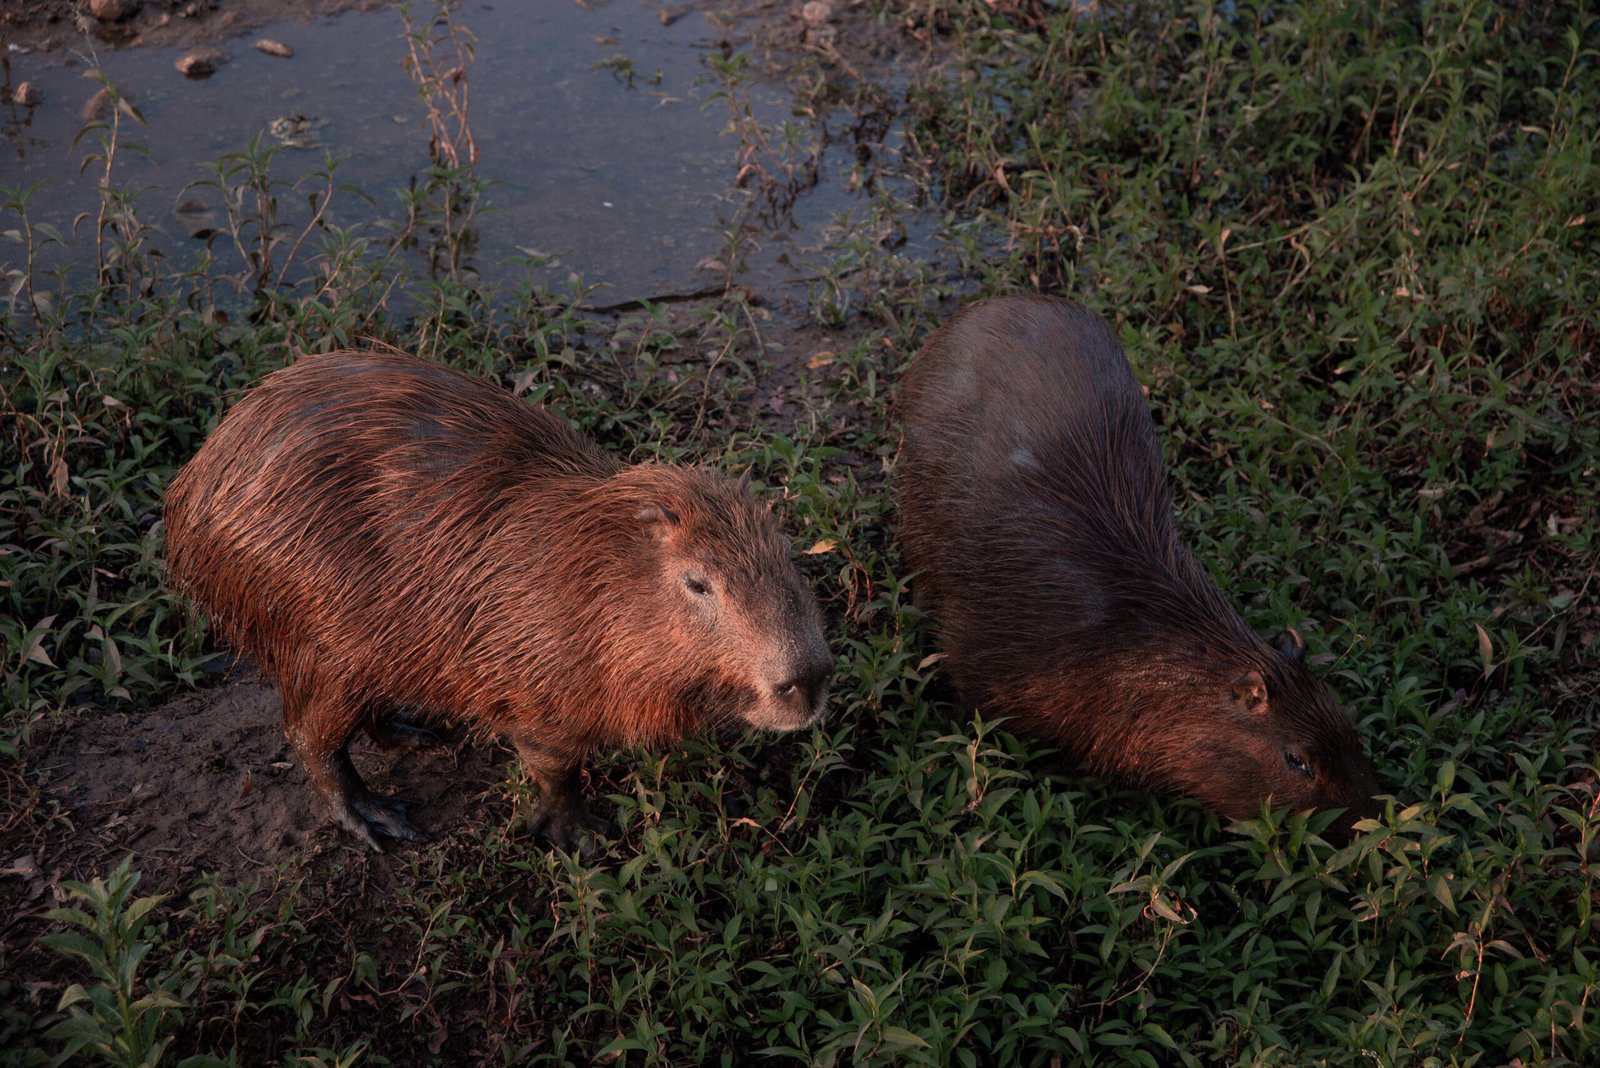 The Friendly Capybara: A Friend to All